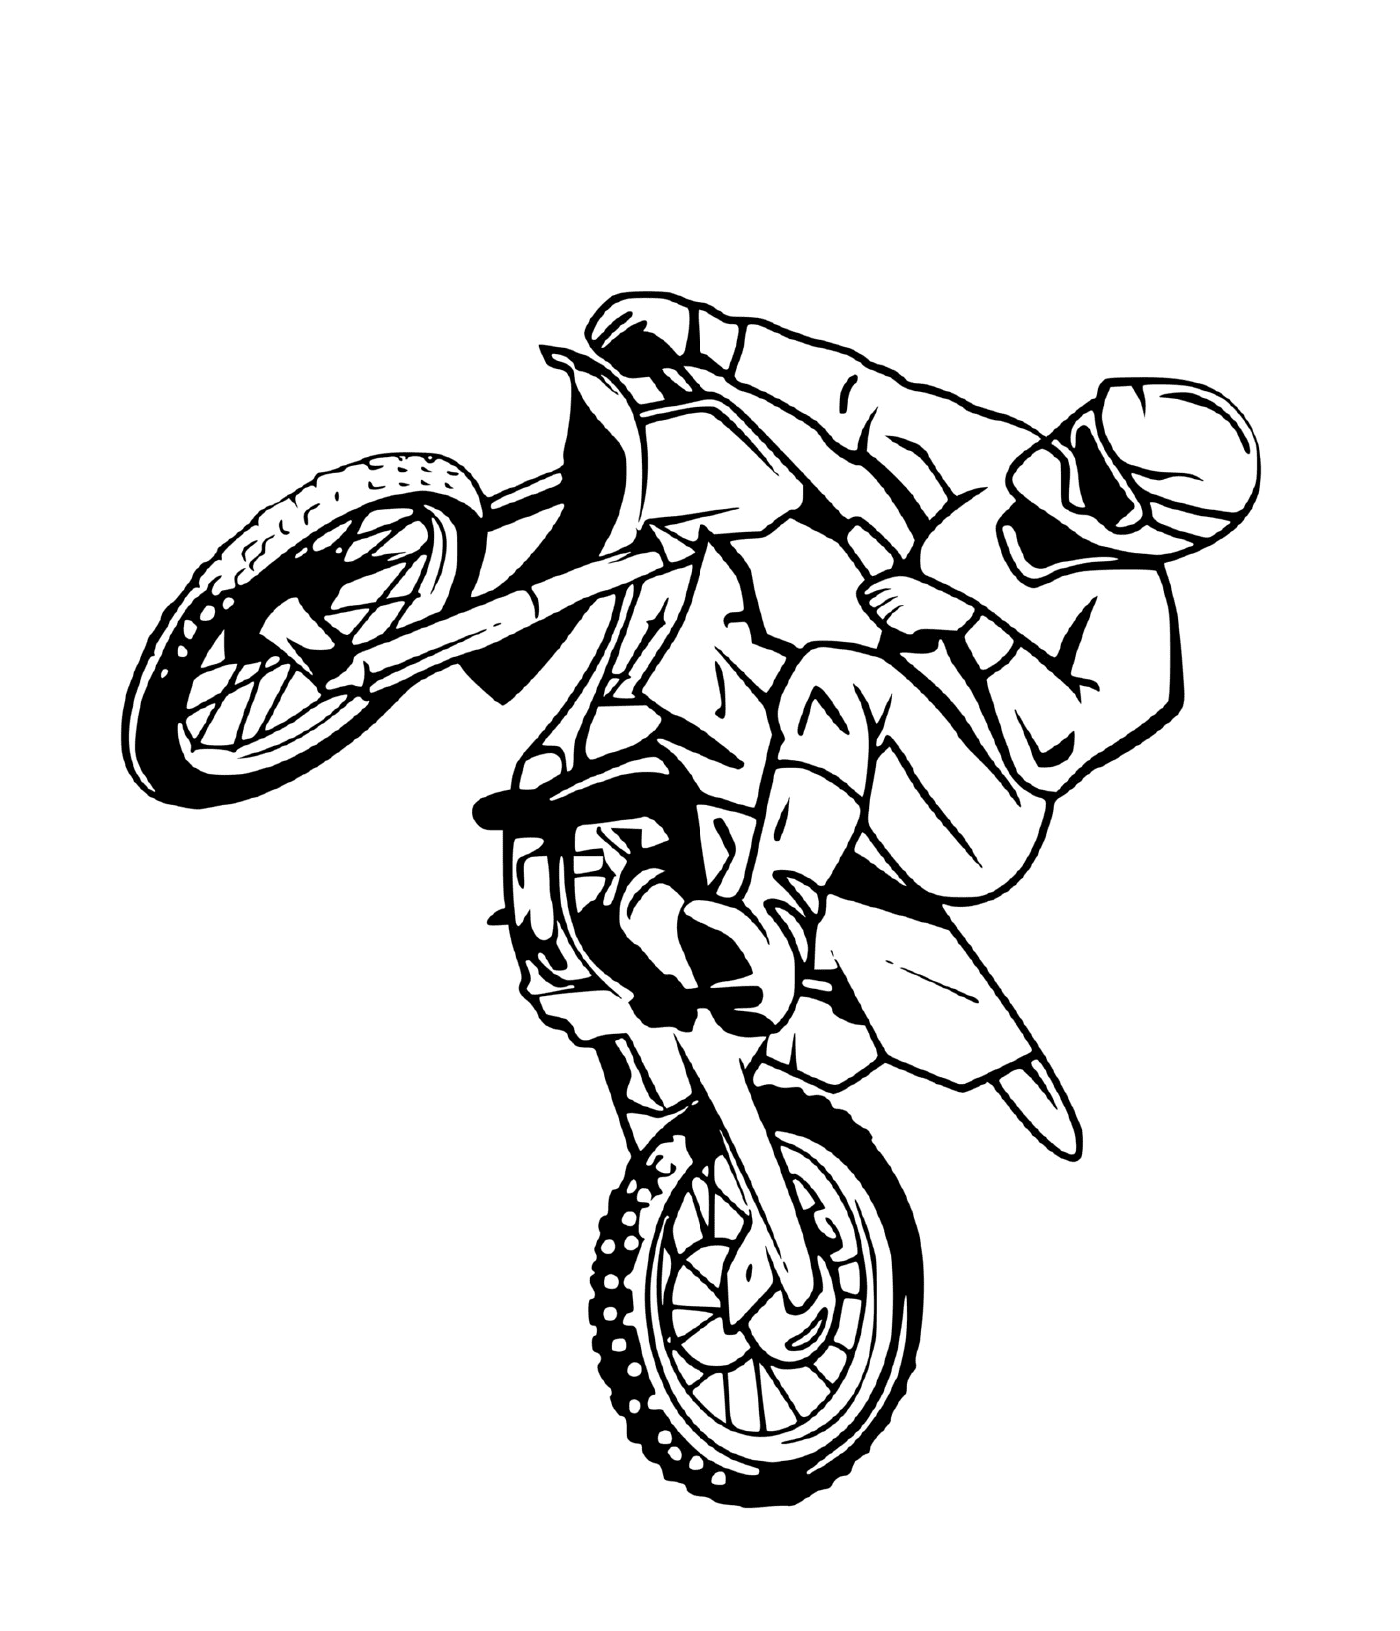  摩托车十字上的人 